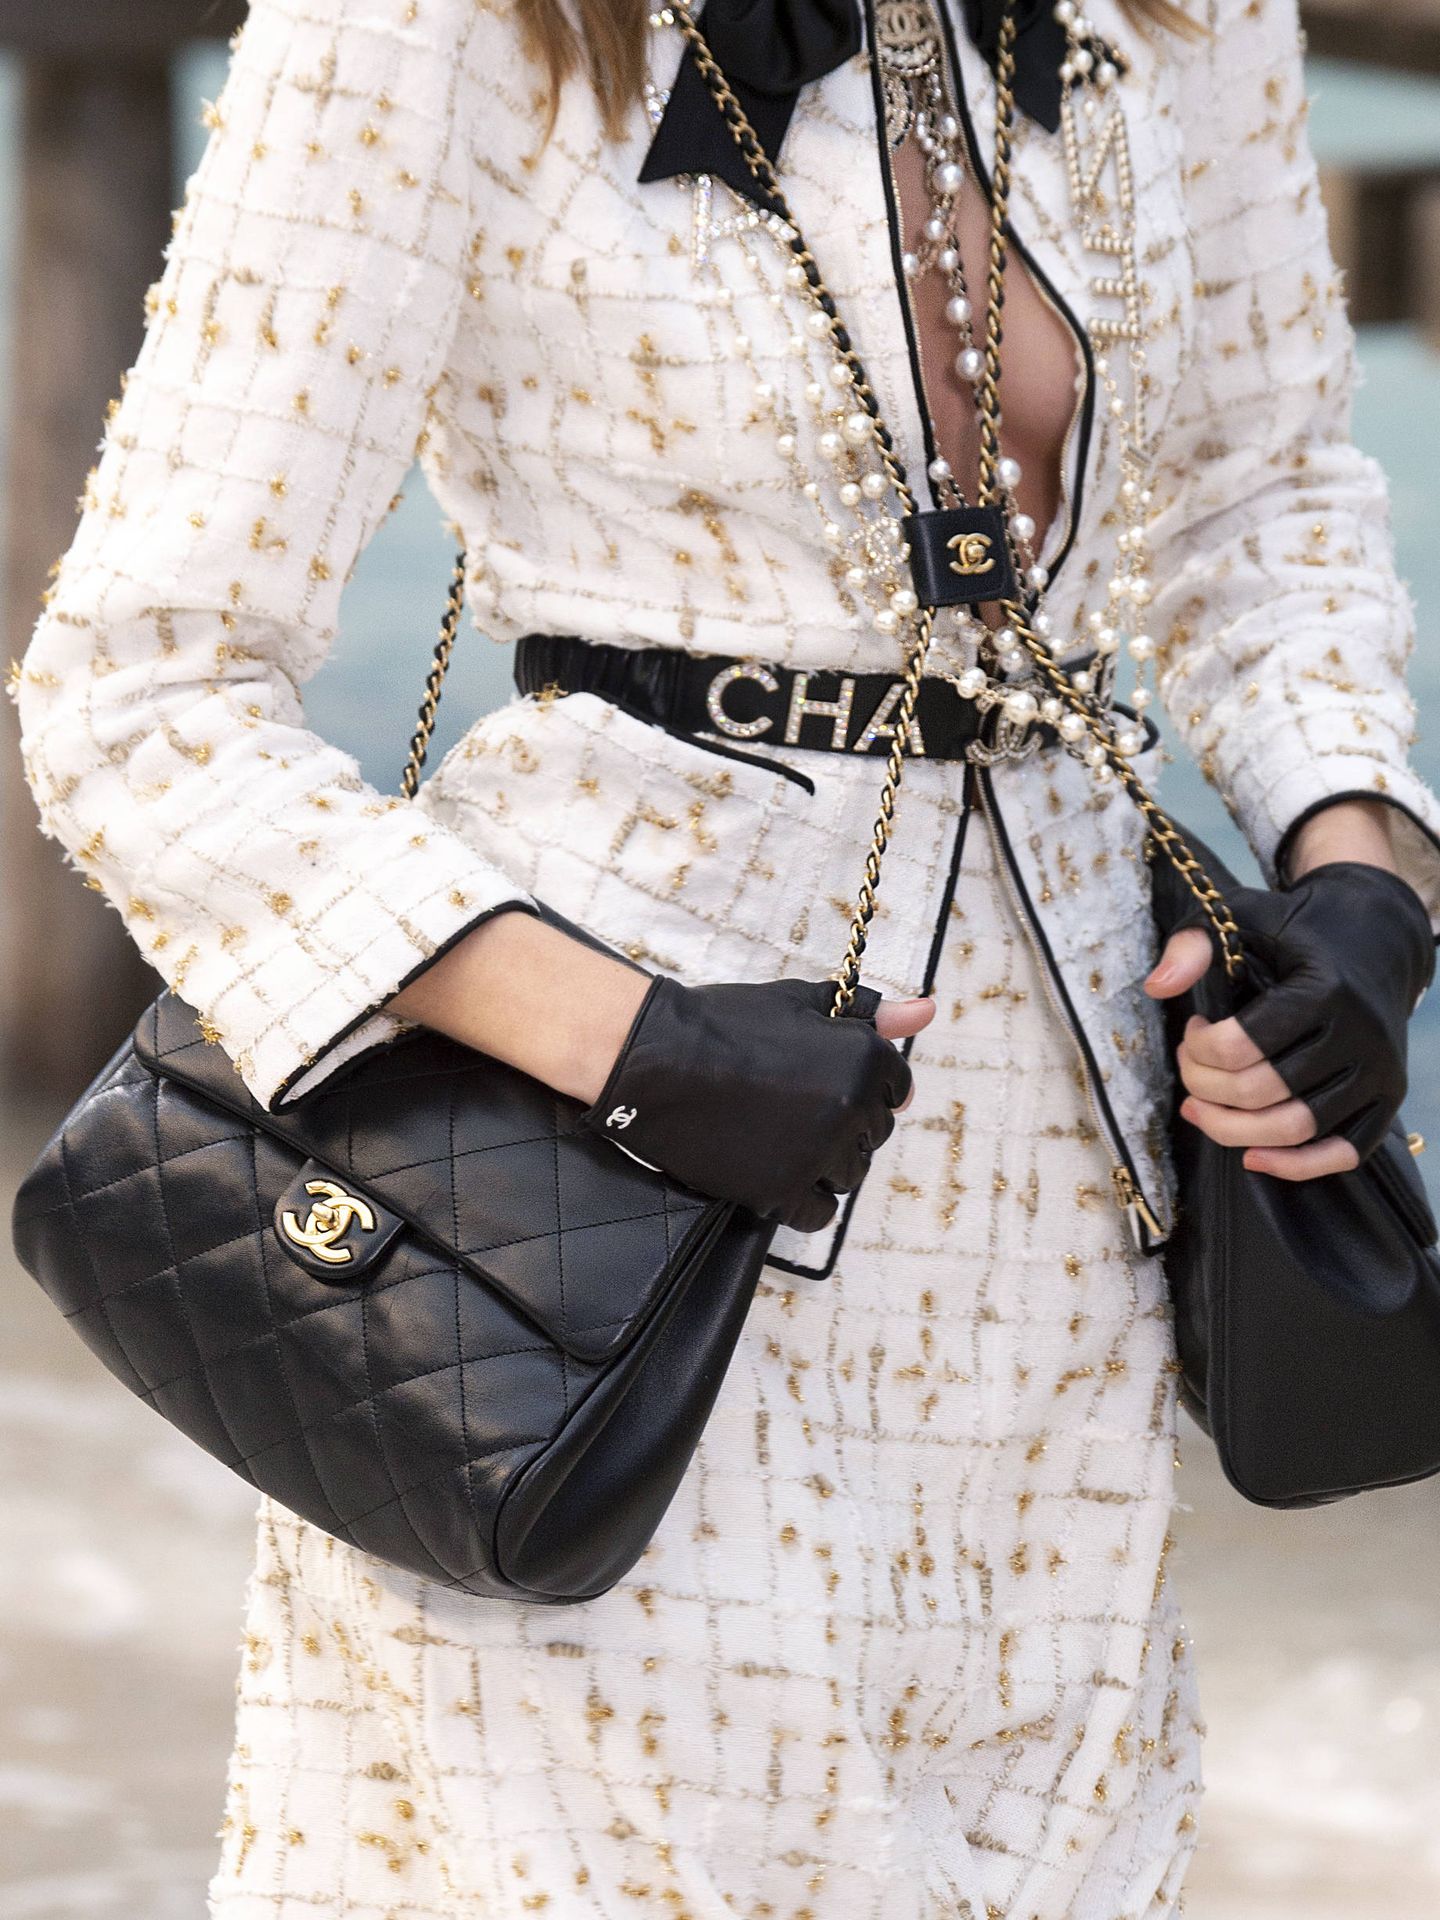 Tener un Chanel es sinónimo de elegancia y distinción. (Imaxtree)